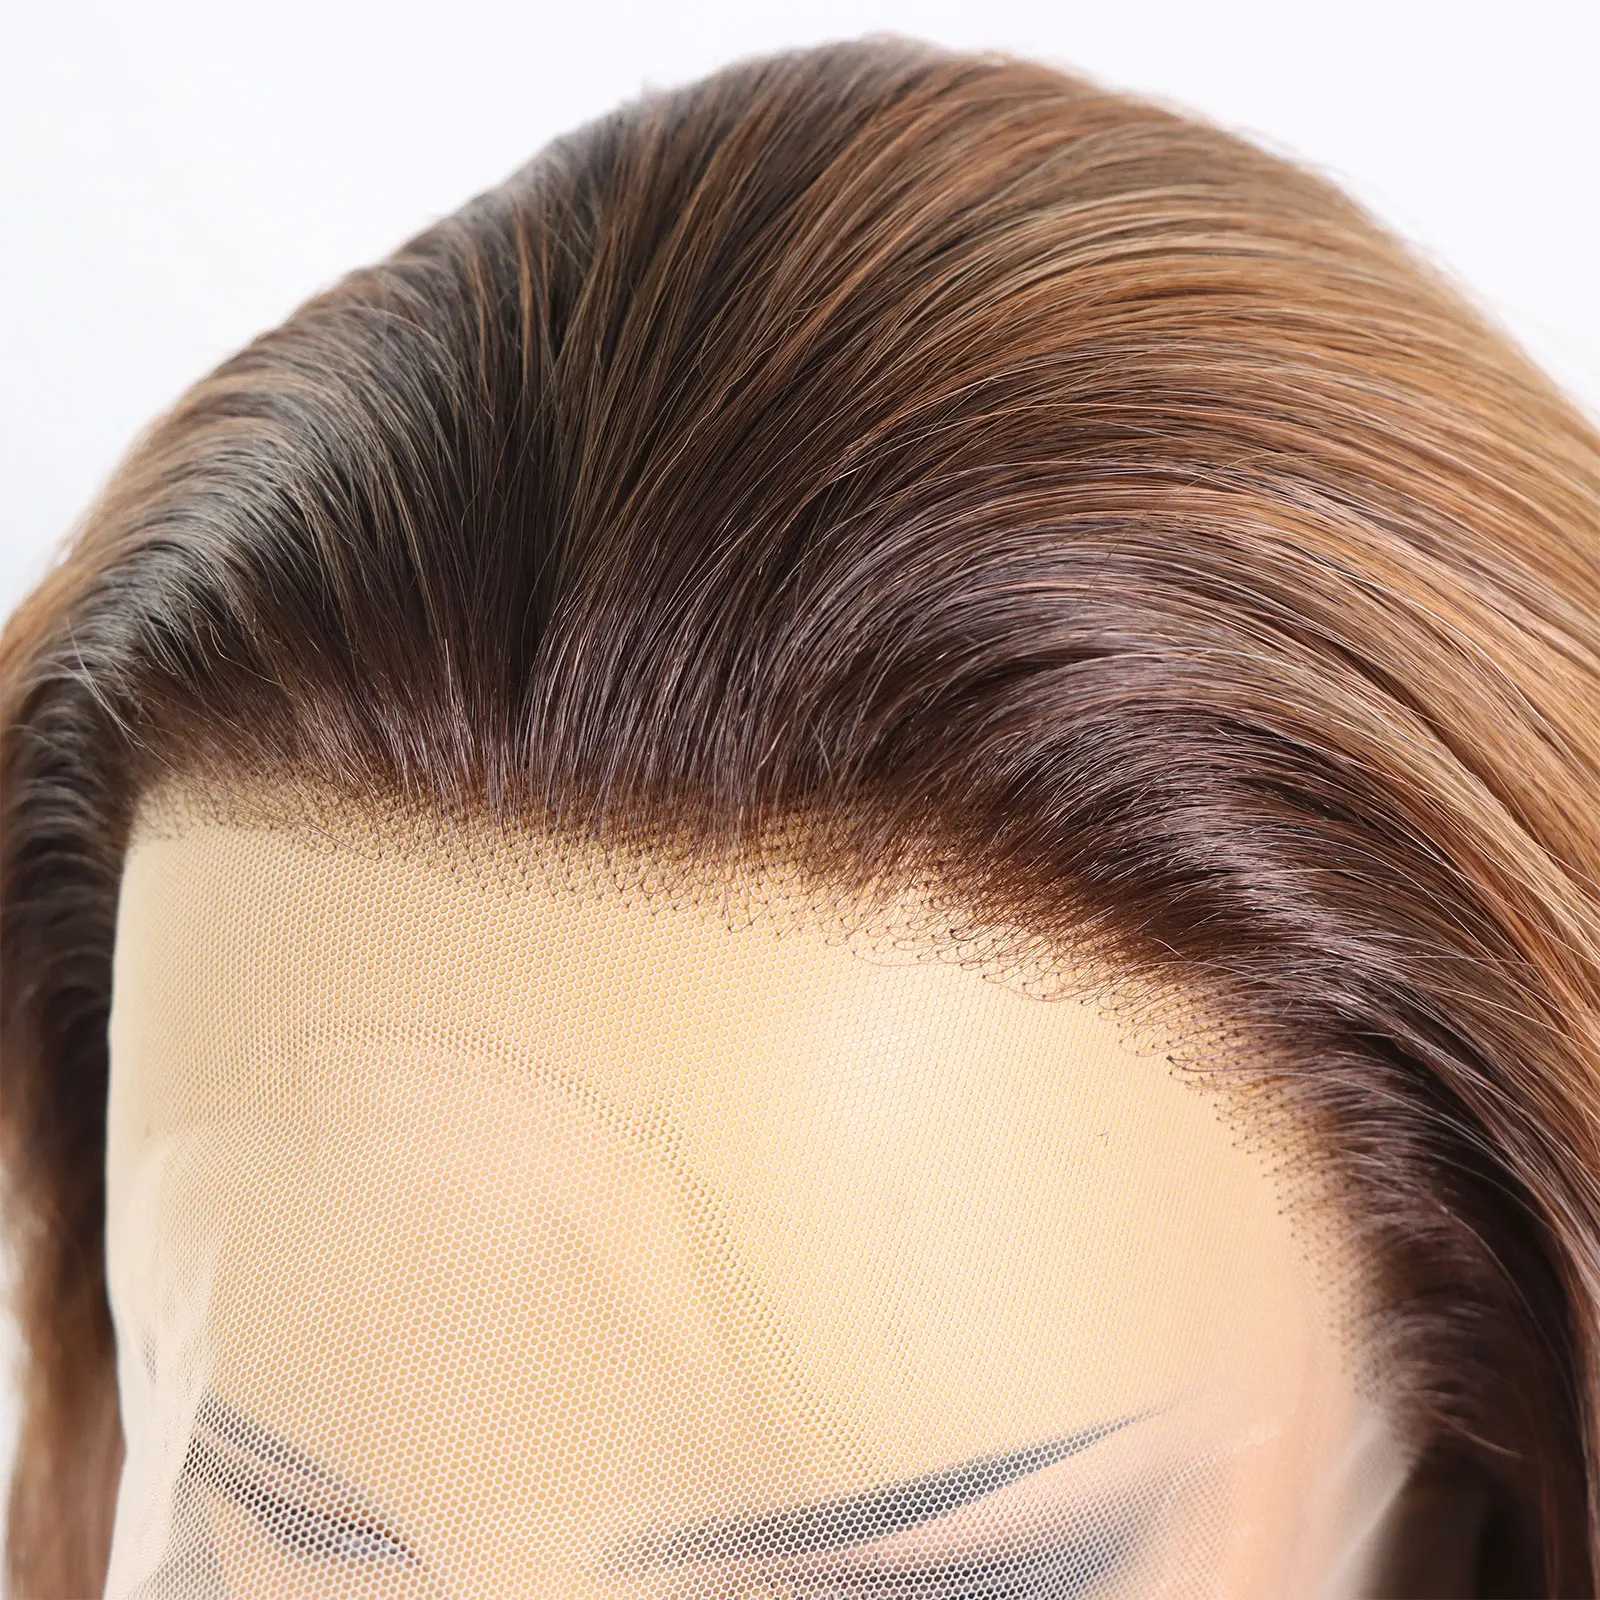 Perucas sintéticas gengibre marrom realce colorido cilina renda frontal peruca adequada para papel feminino que interpreta o adesivo de onda curto longa grátis 13x4 q240427